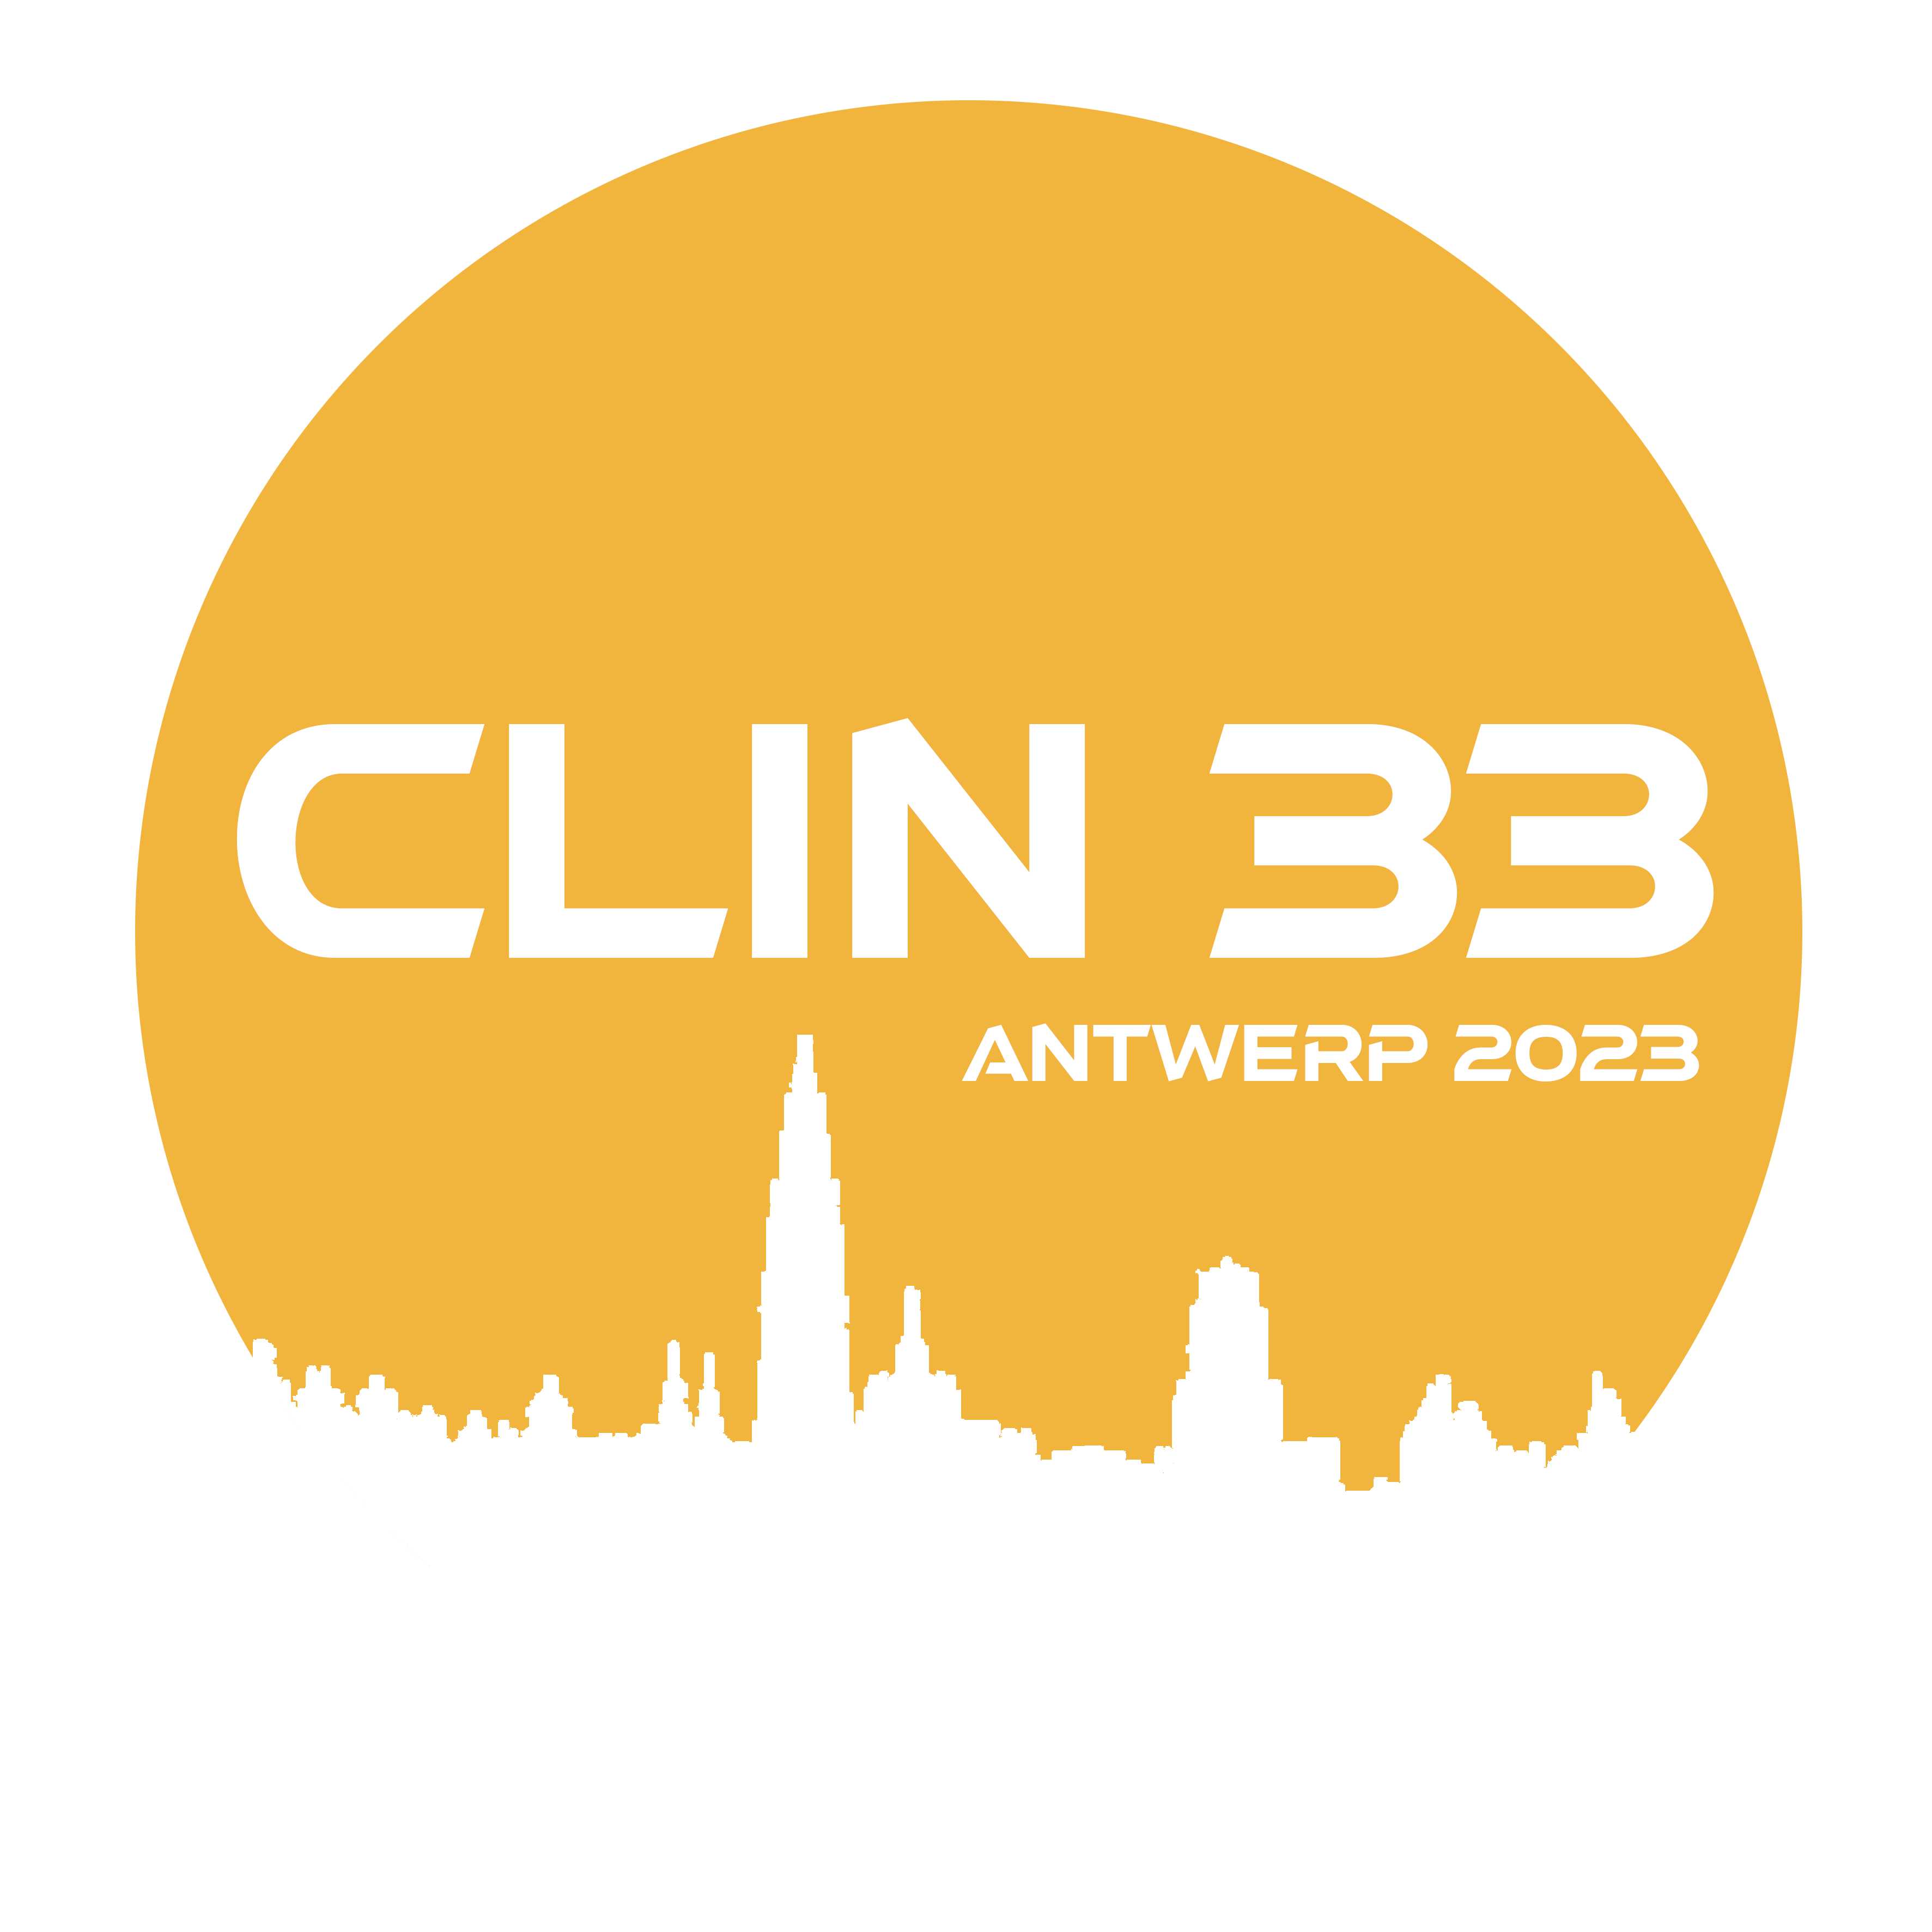 clin33 logo transparant.80573301